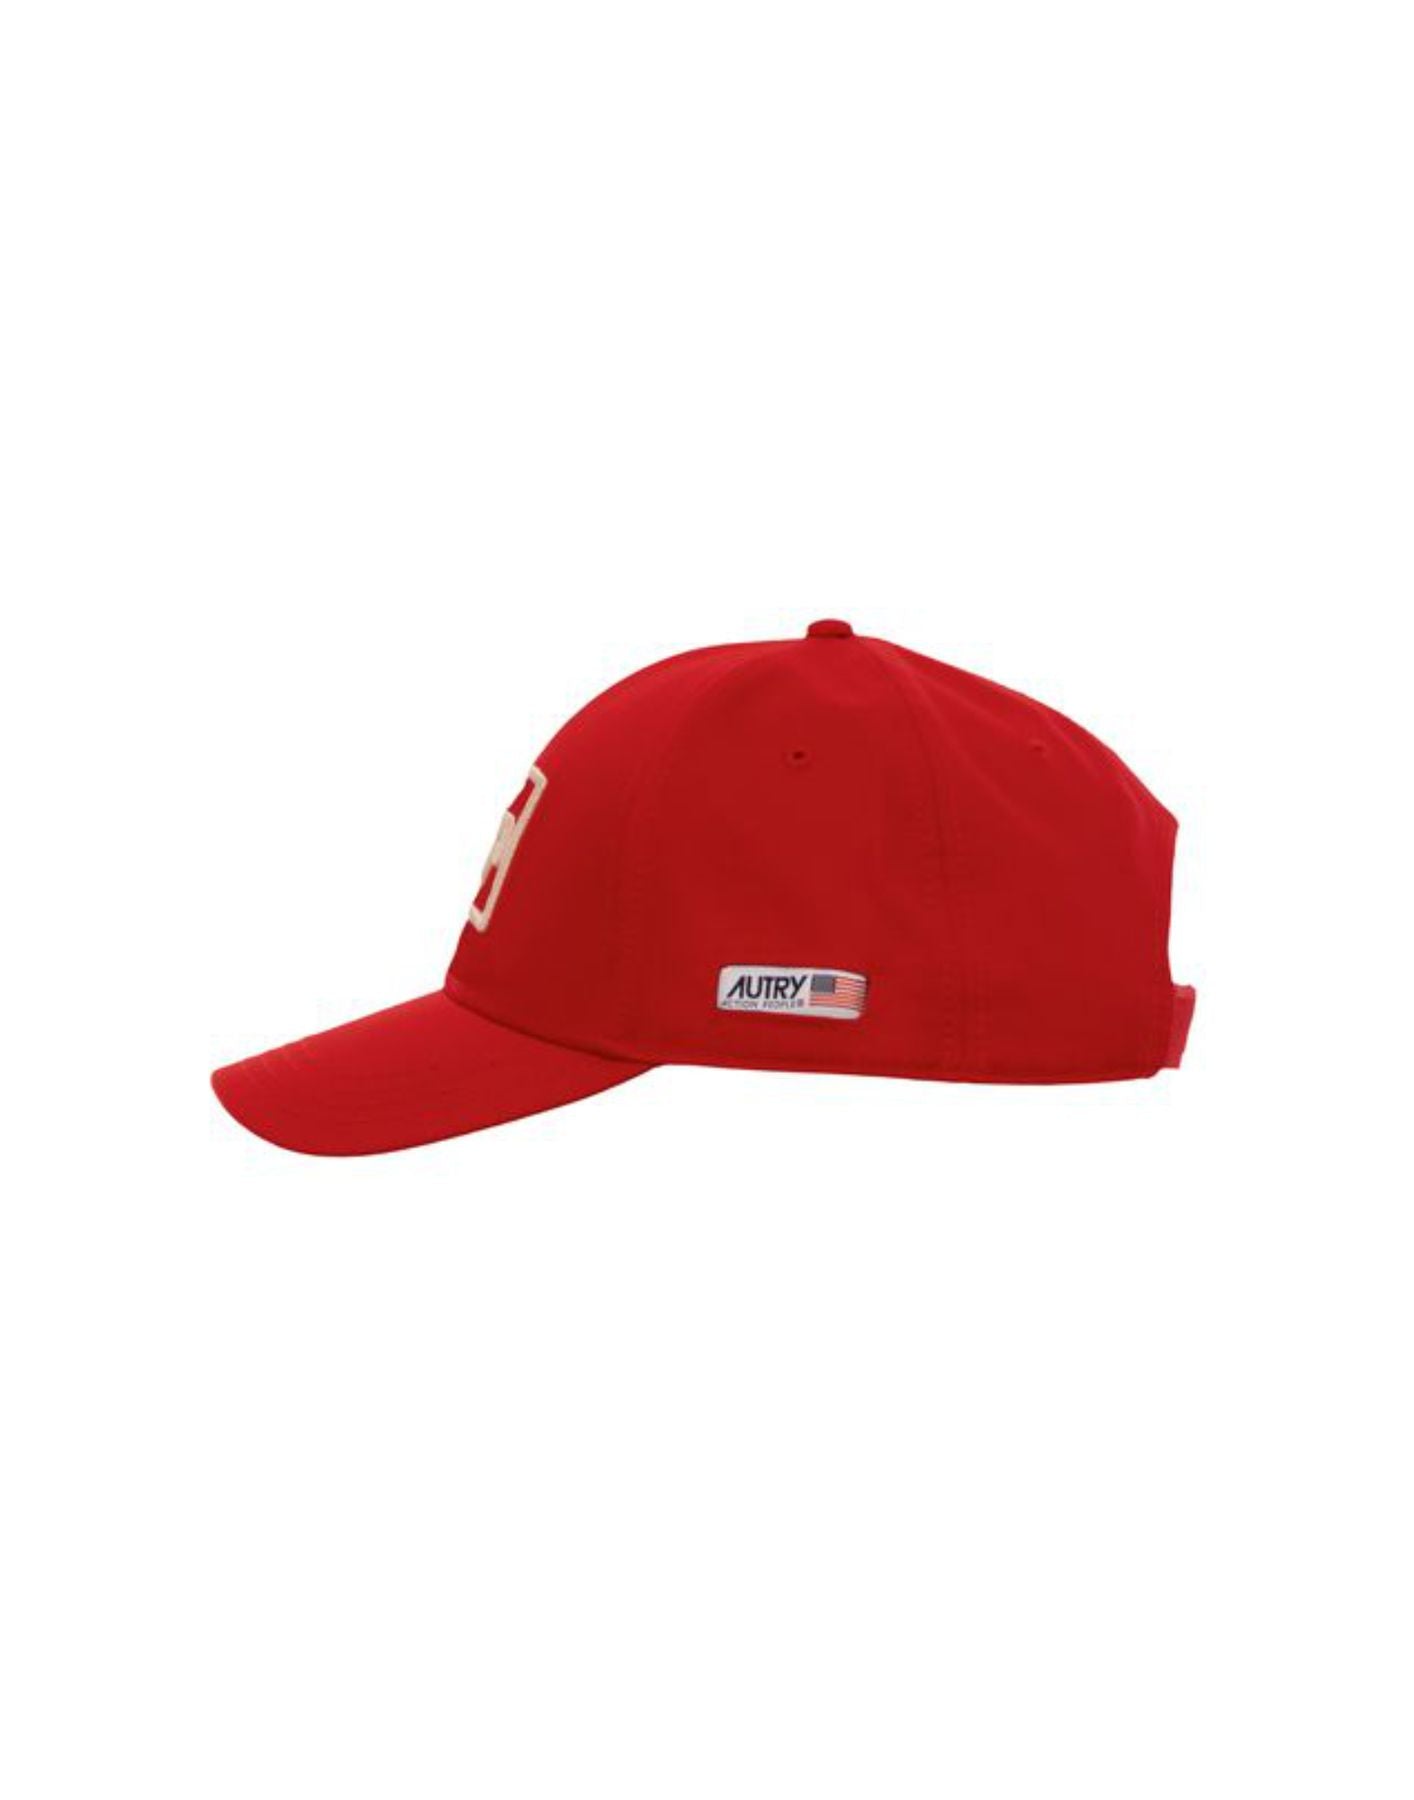 Cappello unisex ACIU 470R RED Autry